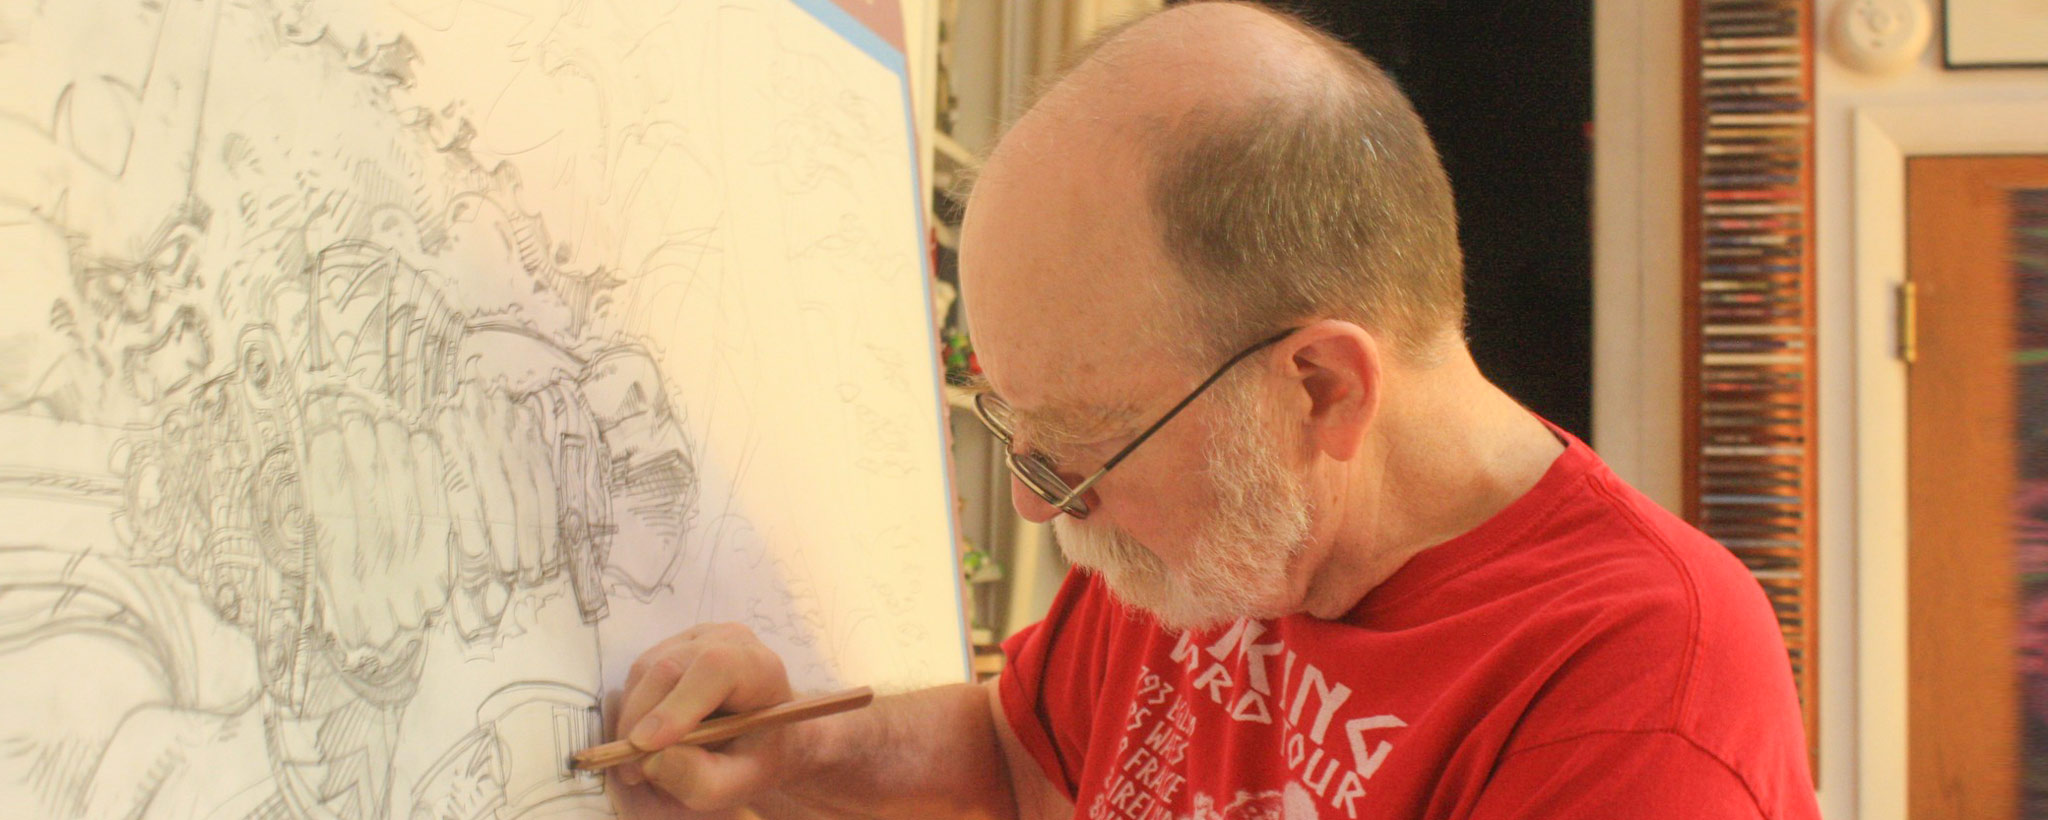 Marvel comic book writer and artist Walt Simonson